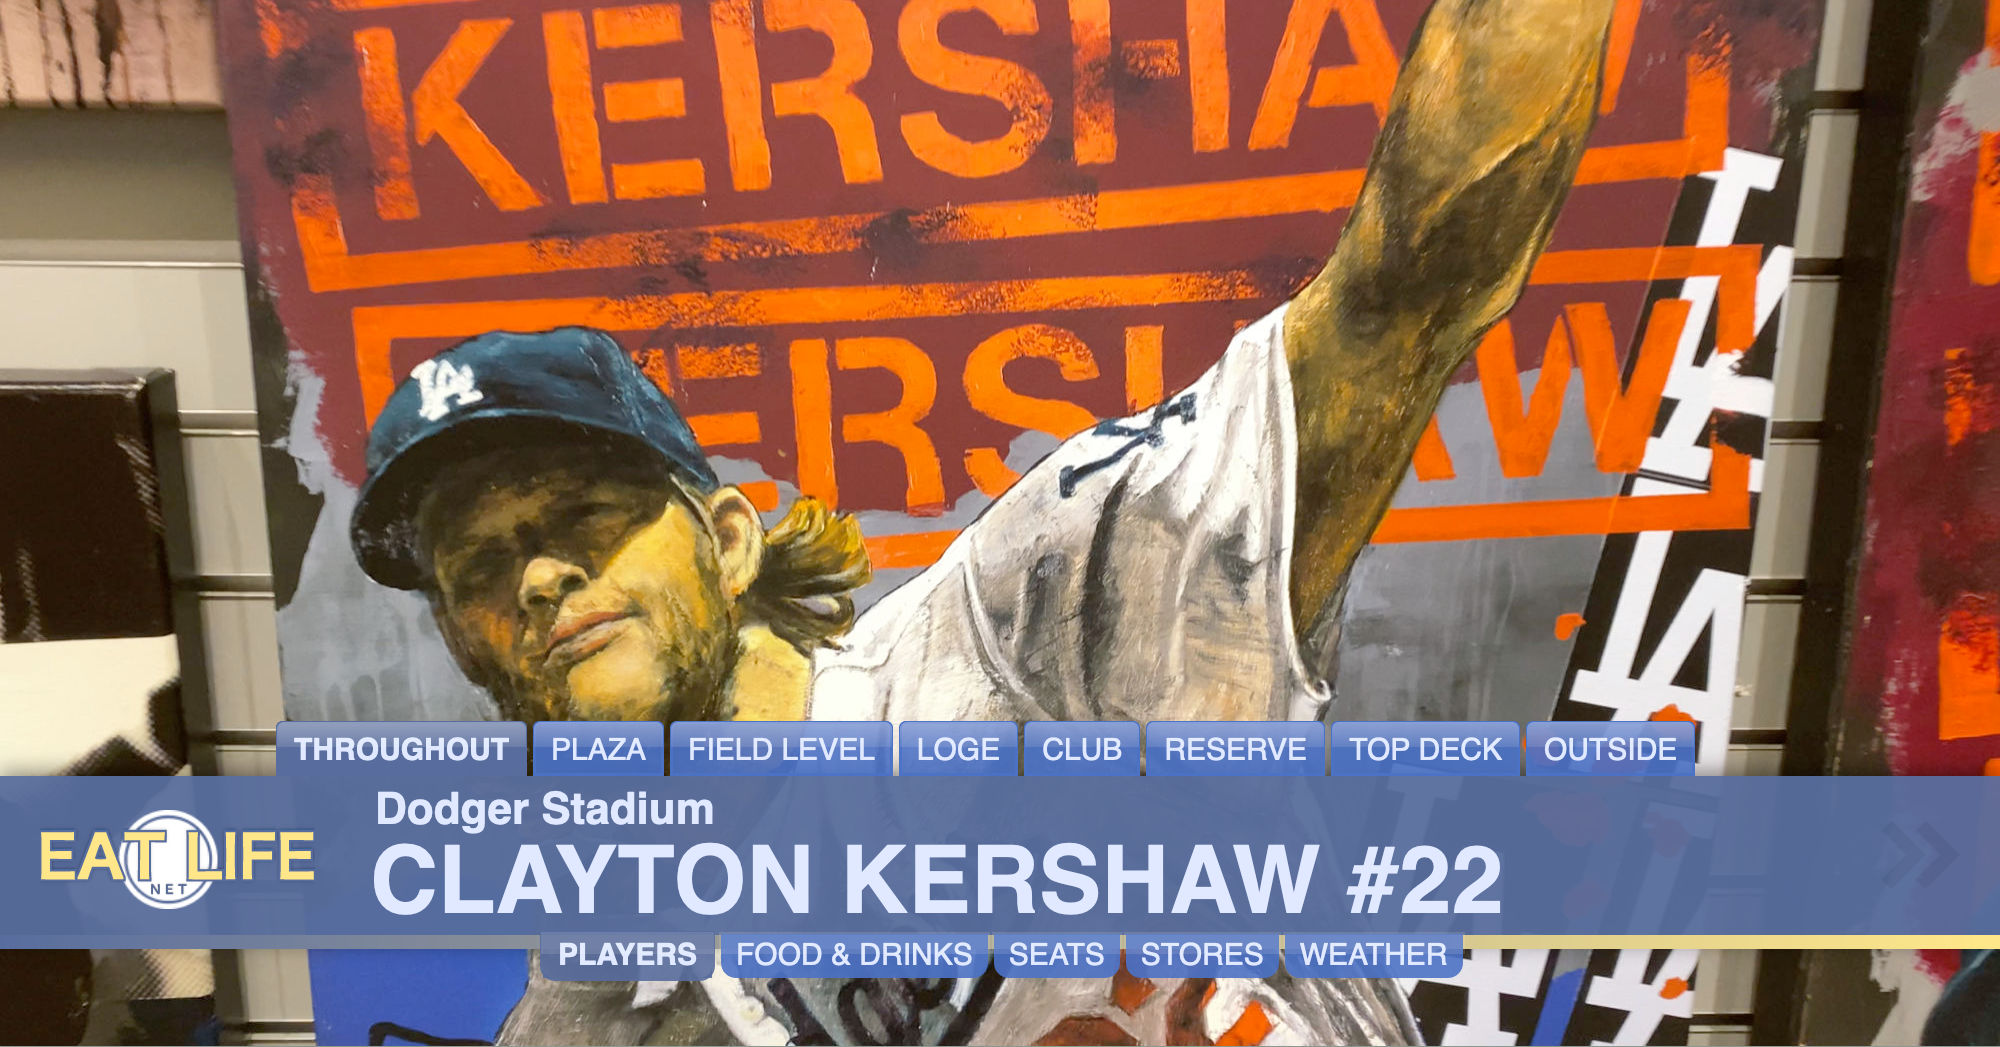 Clayton Kershaw #22